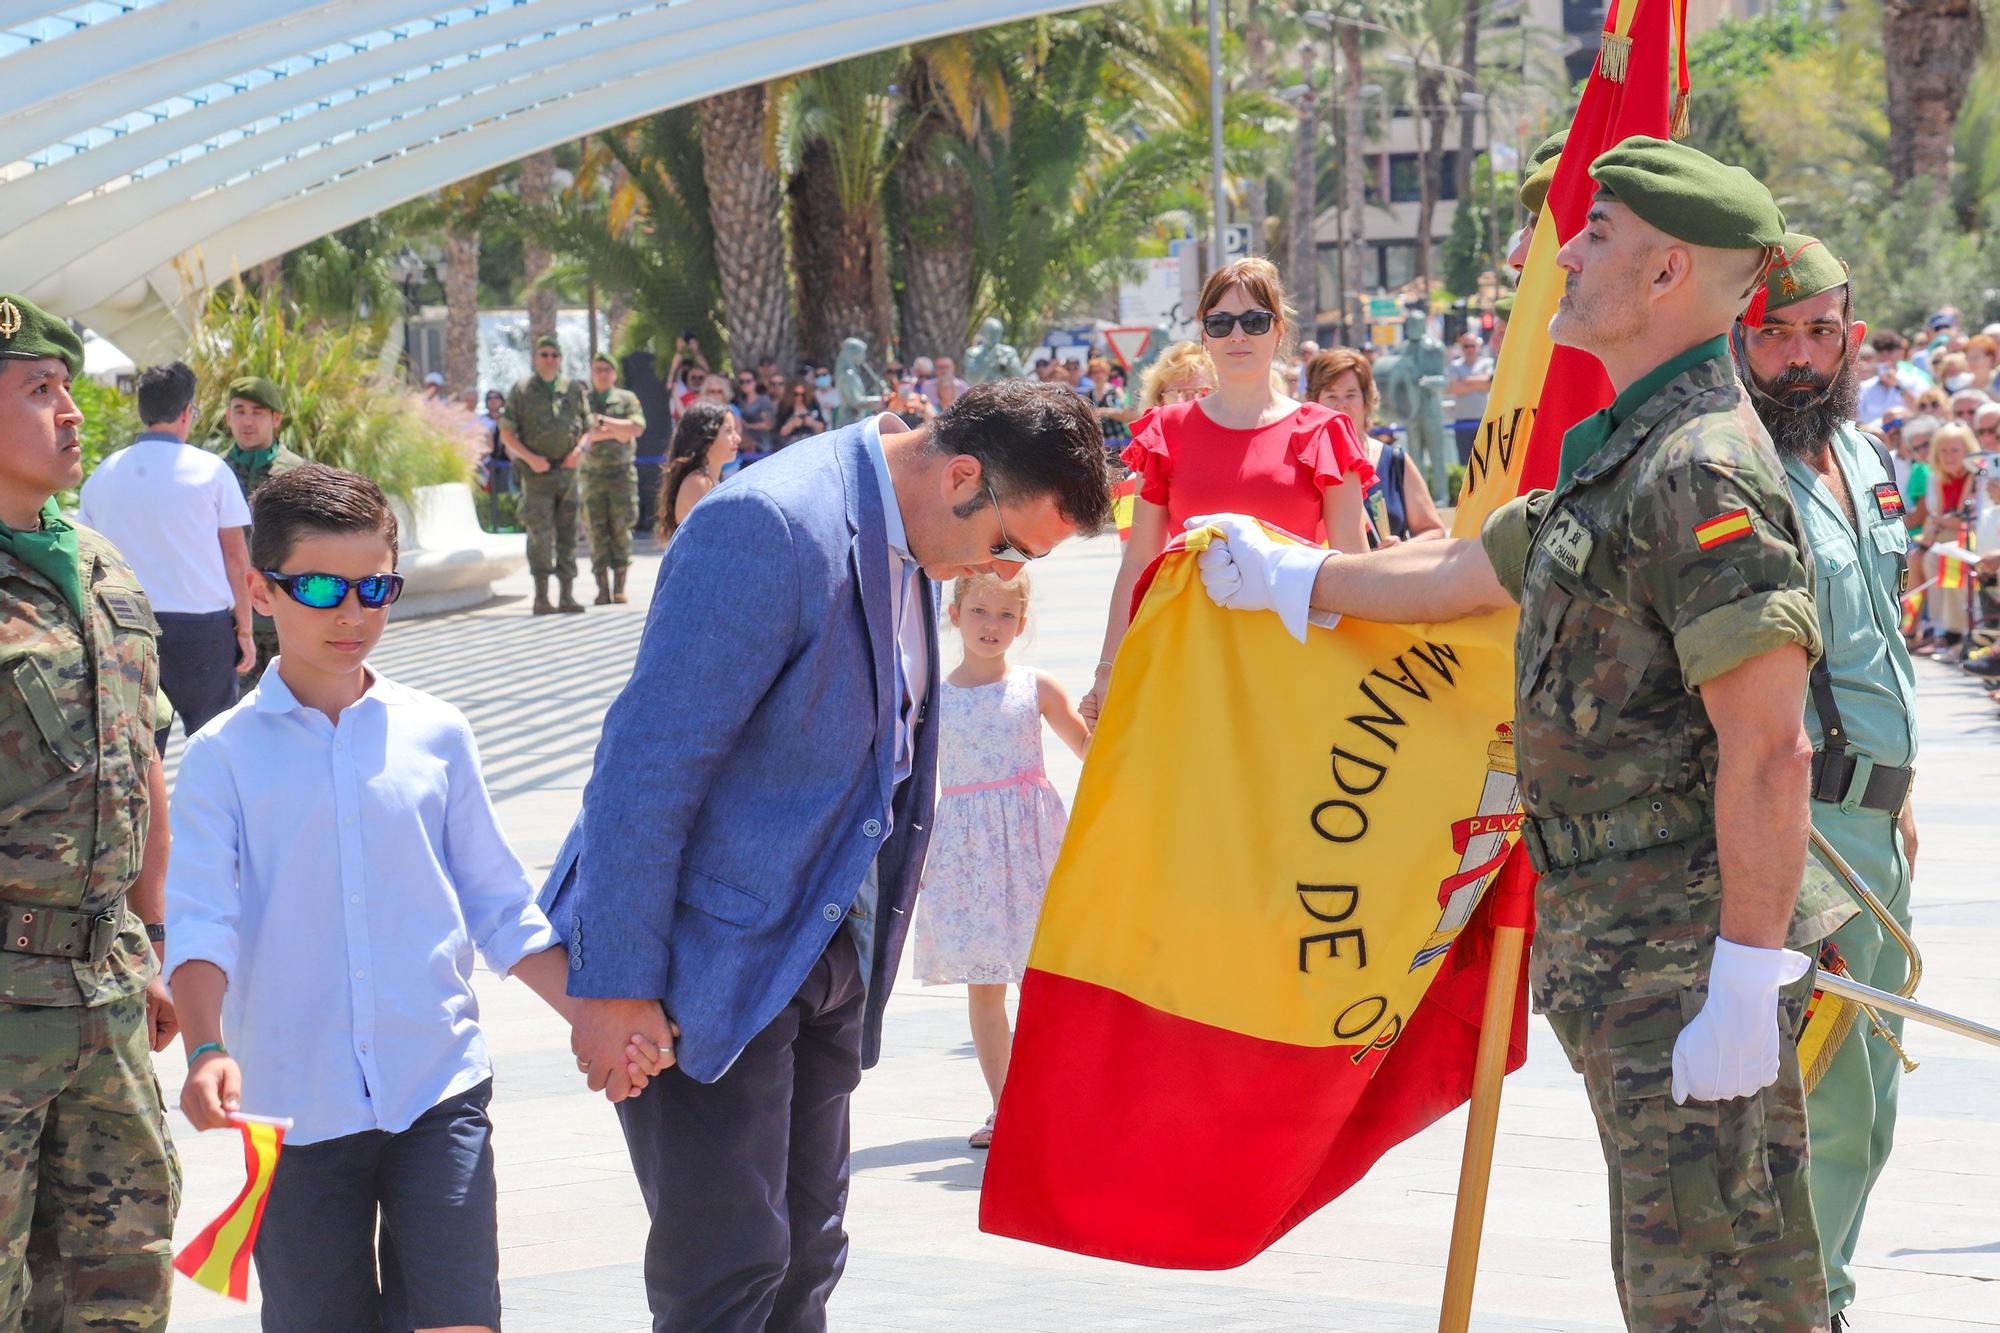 Sol y fidelidad a la bandera en Torrevieja